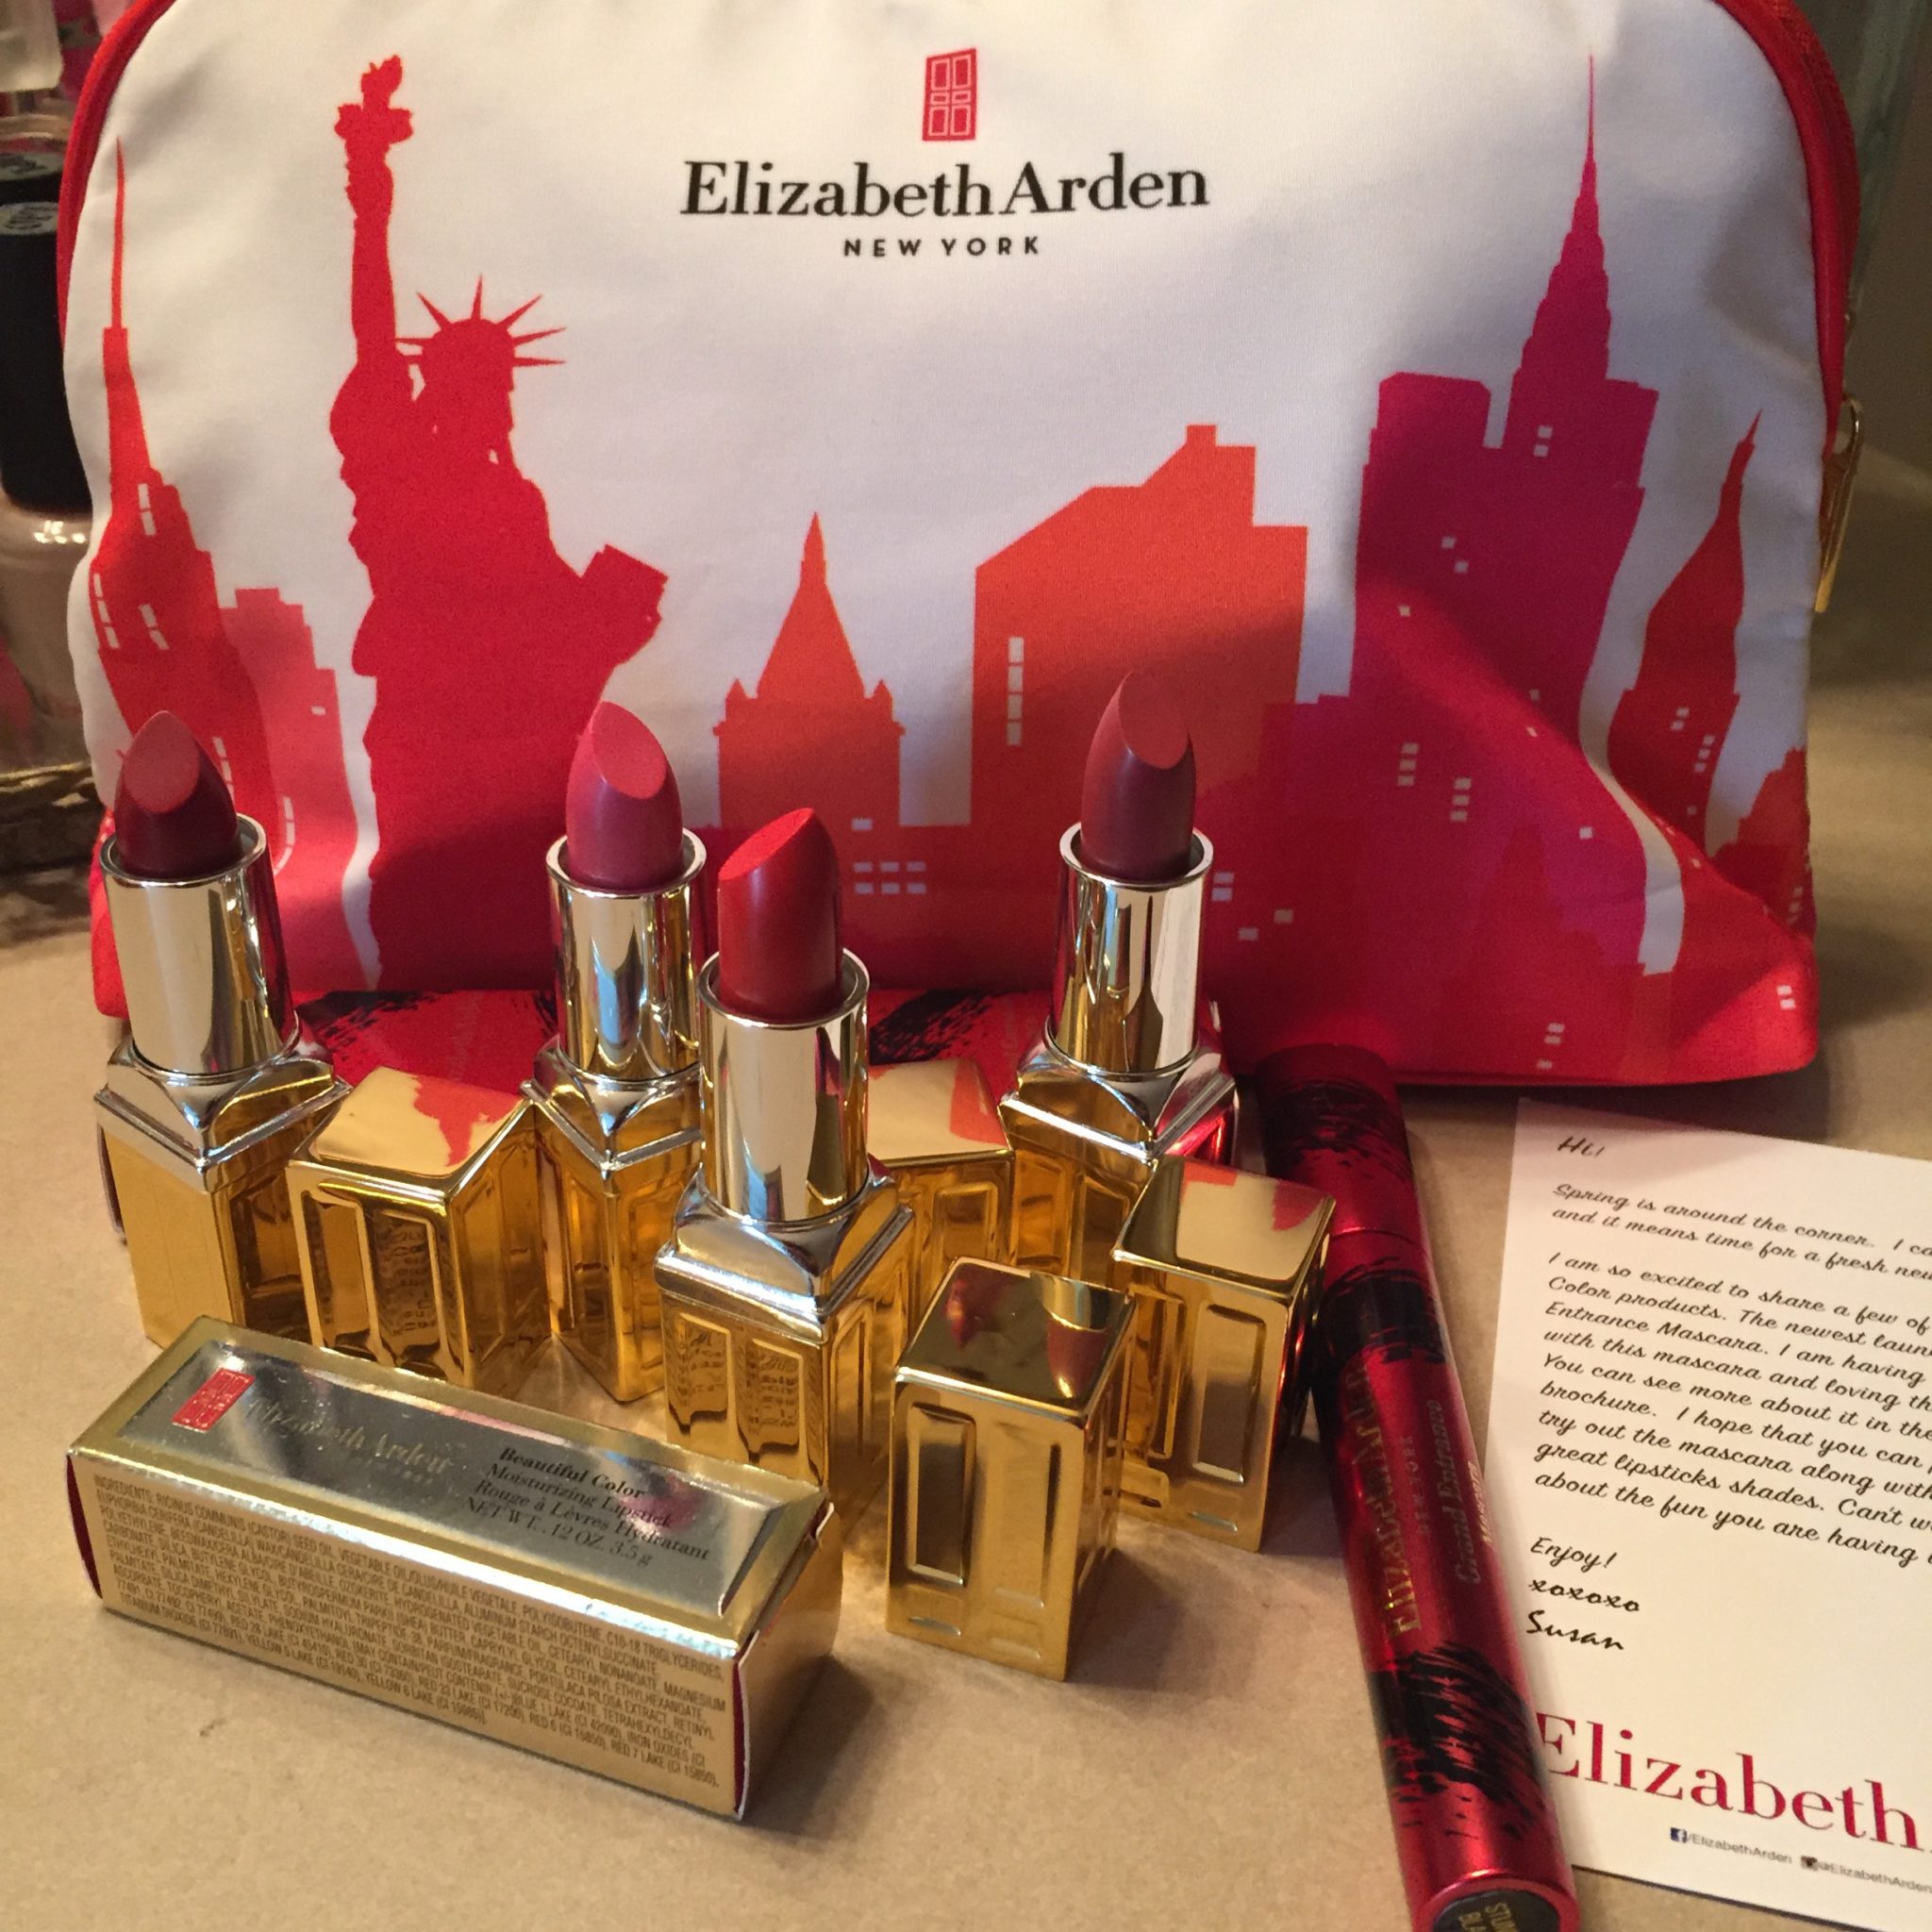 Get The Look: Elizabeth Arden New York